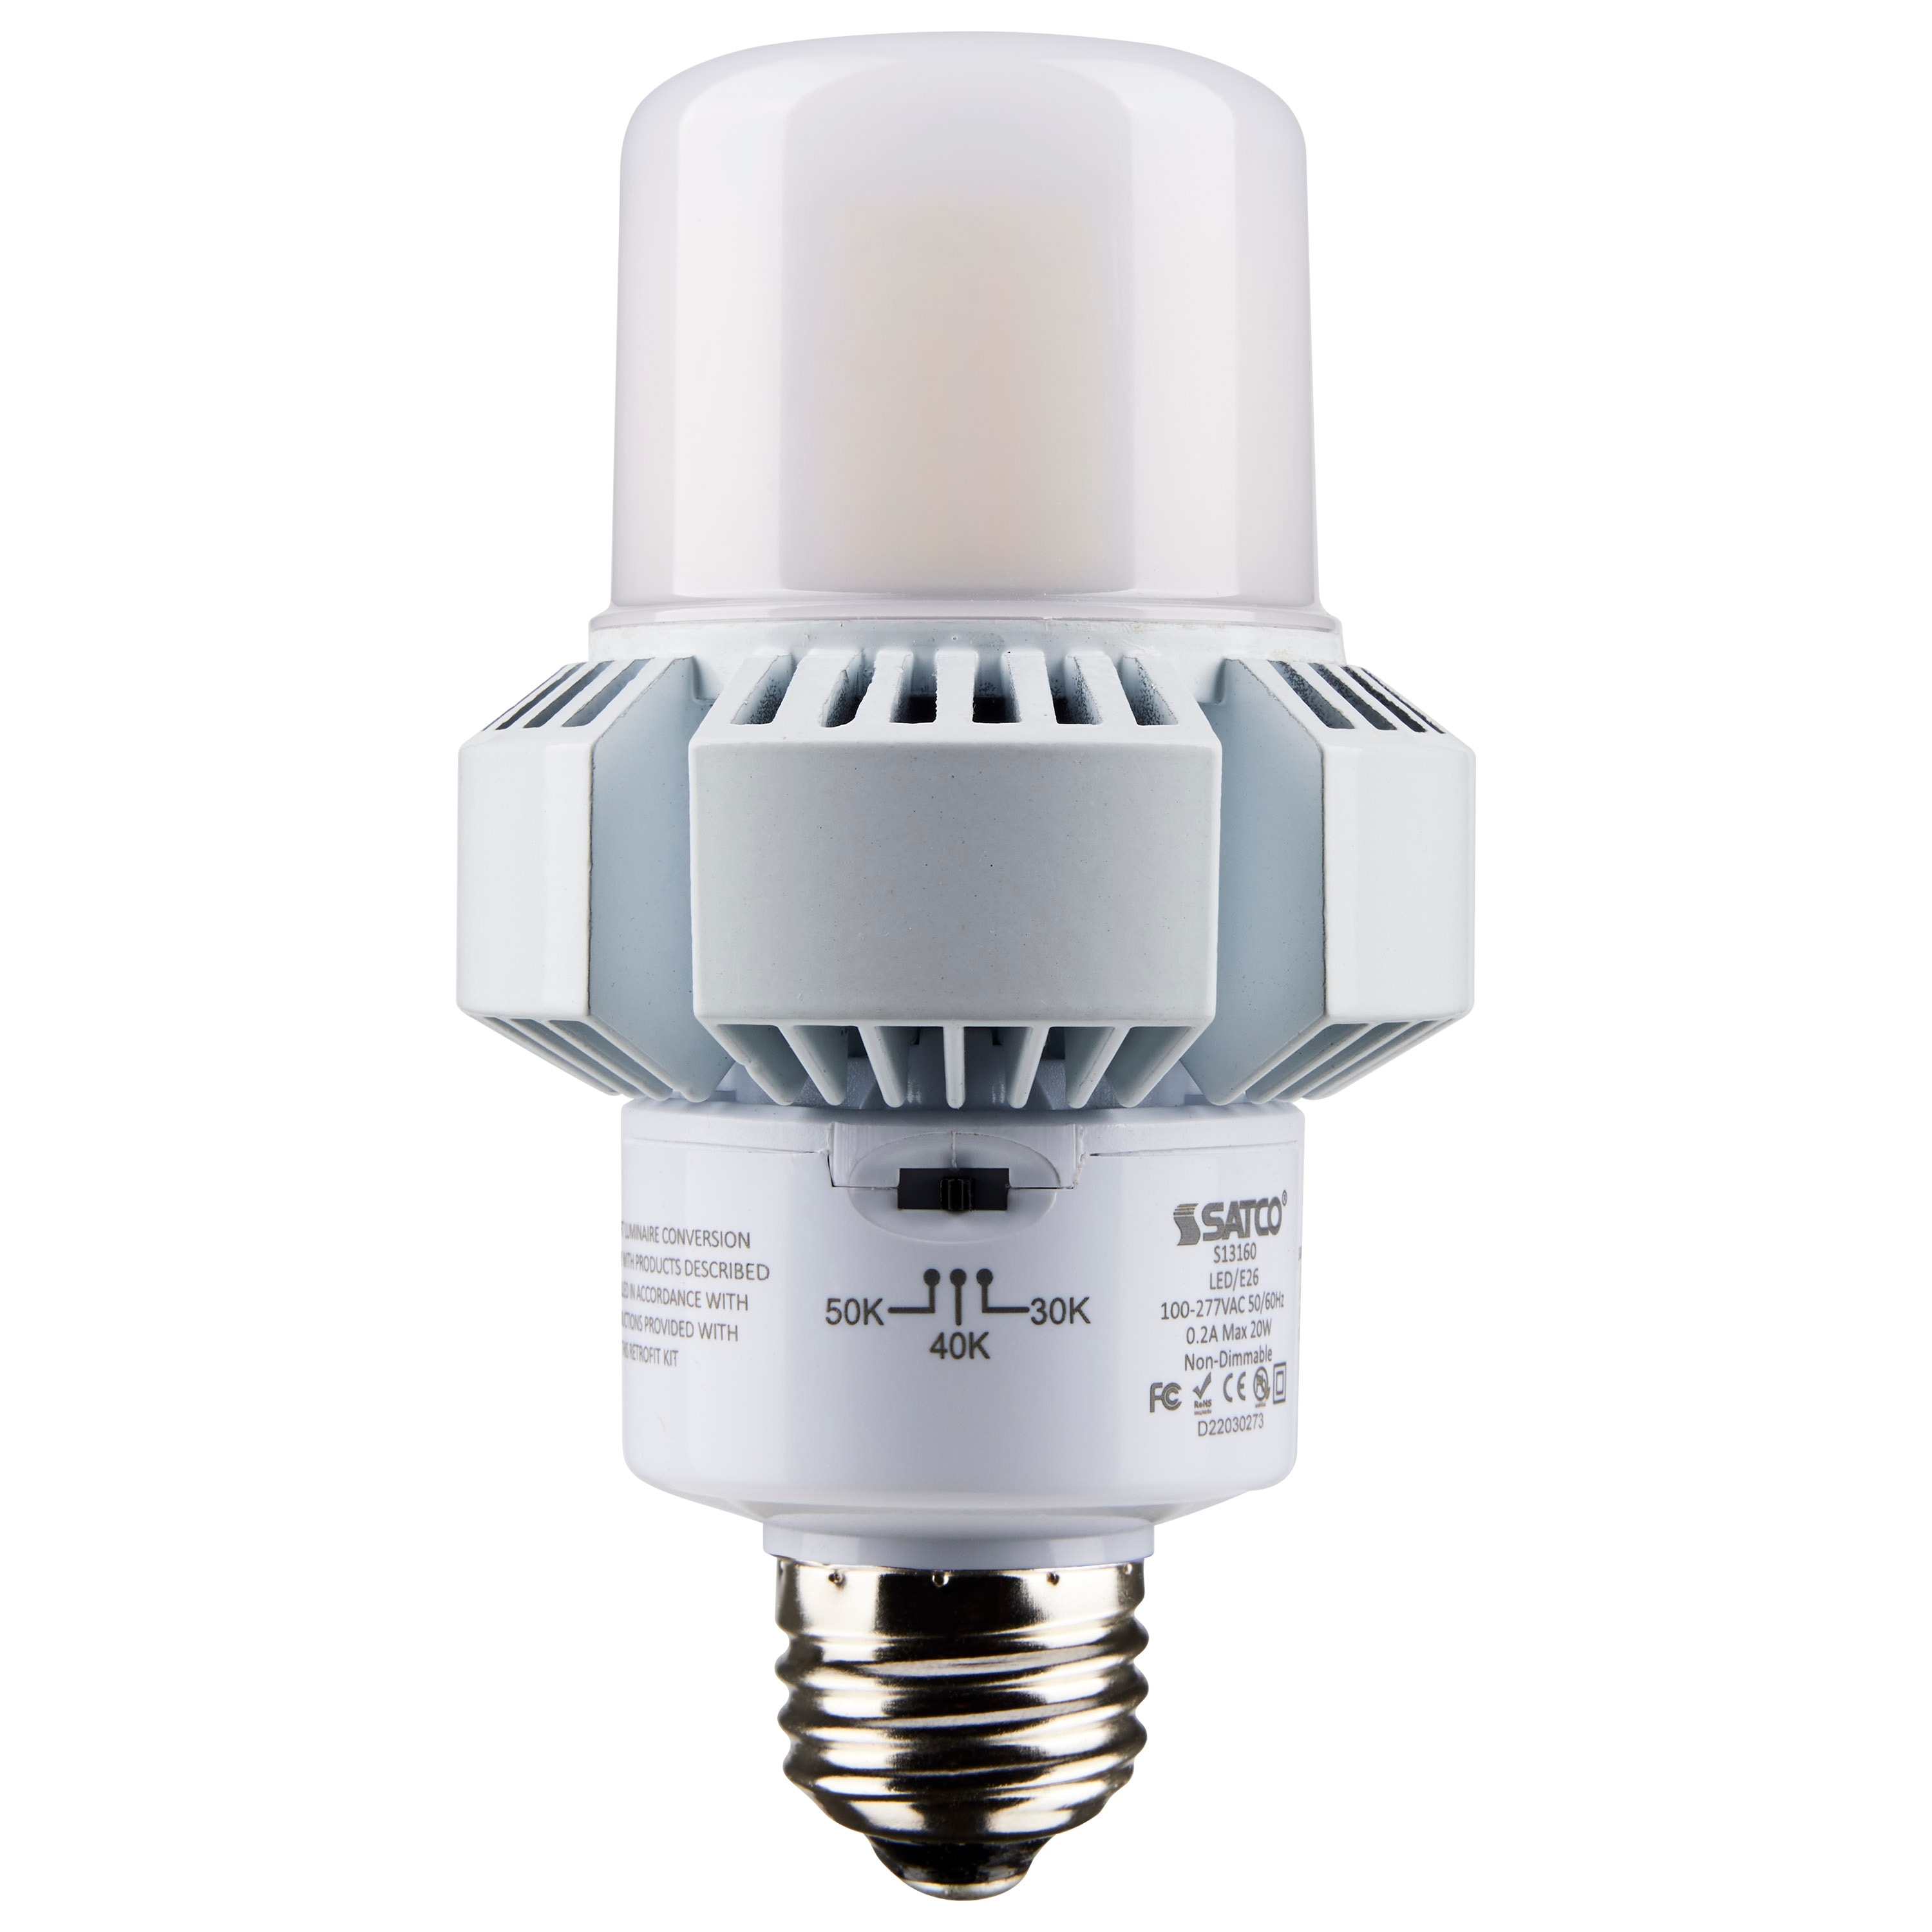 Ge 4.5w 120v MR16 GU10 3000k 25 deg LED Light Bulb